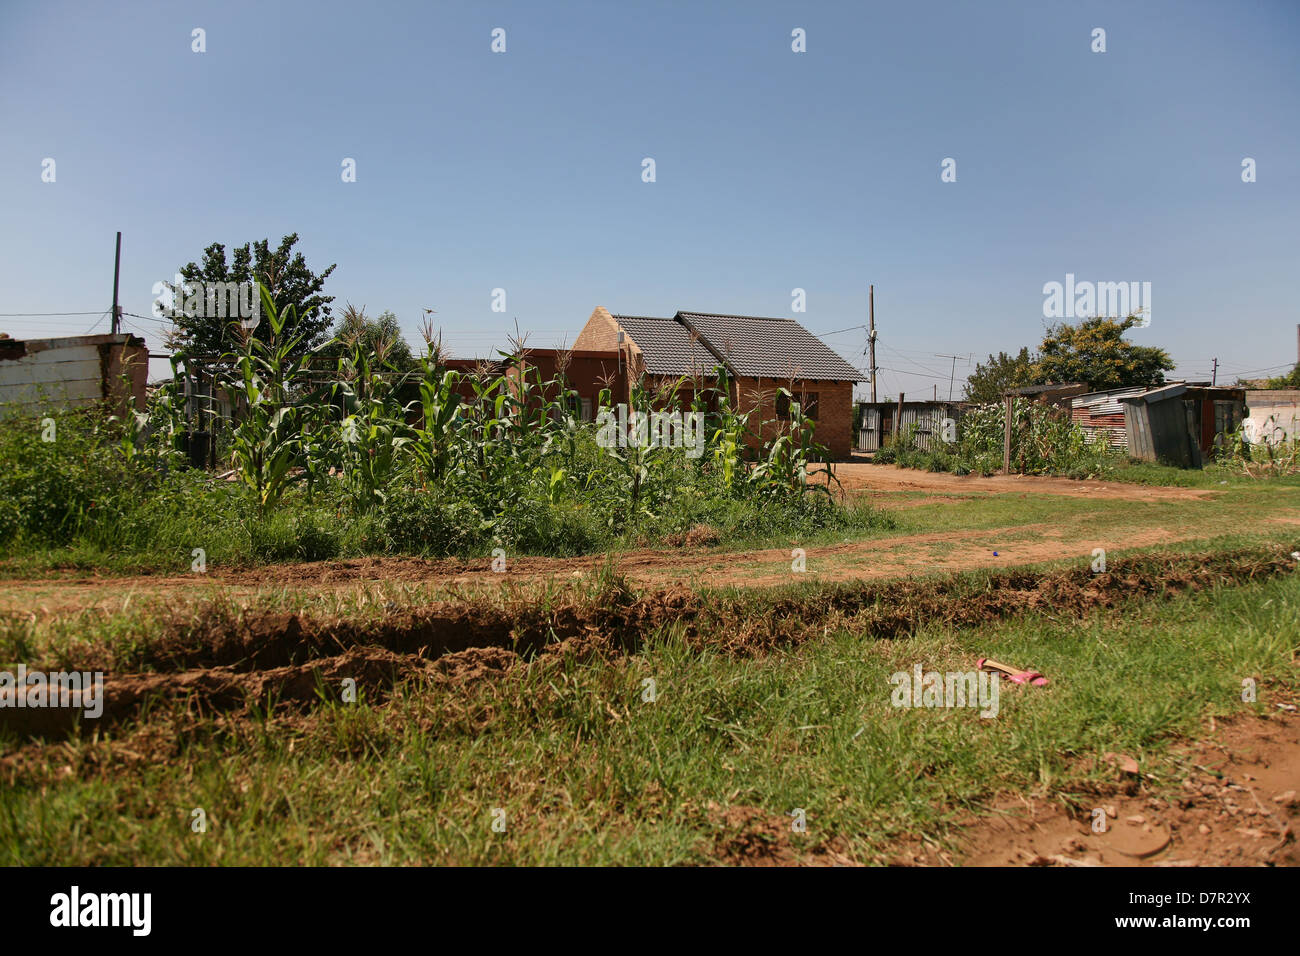 Los ciudadanos de una aldea rural cultivar sus propias hortalizas Foto de stock